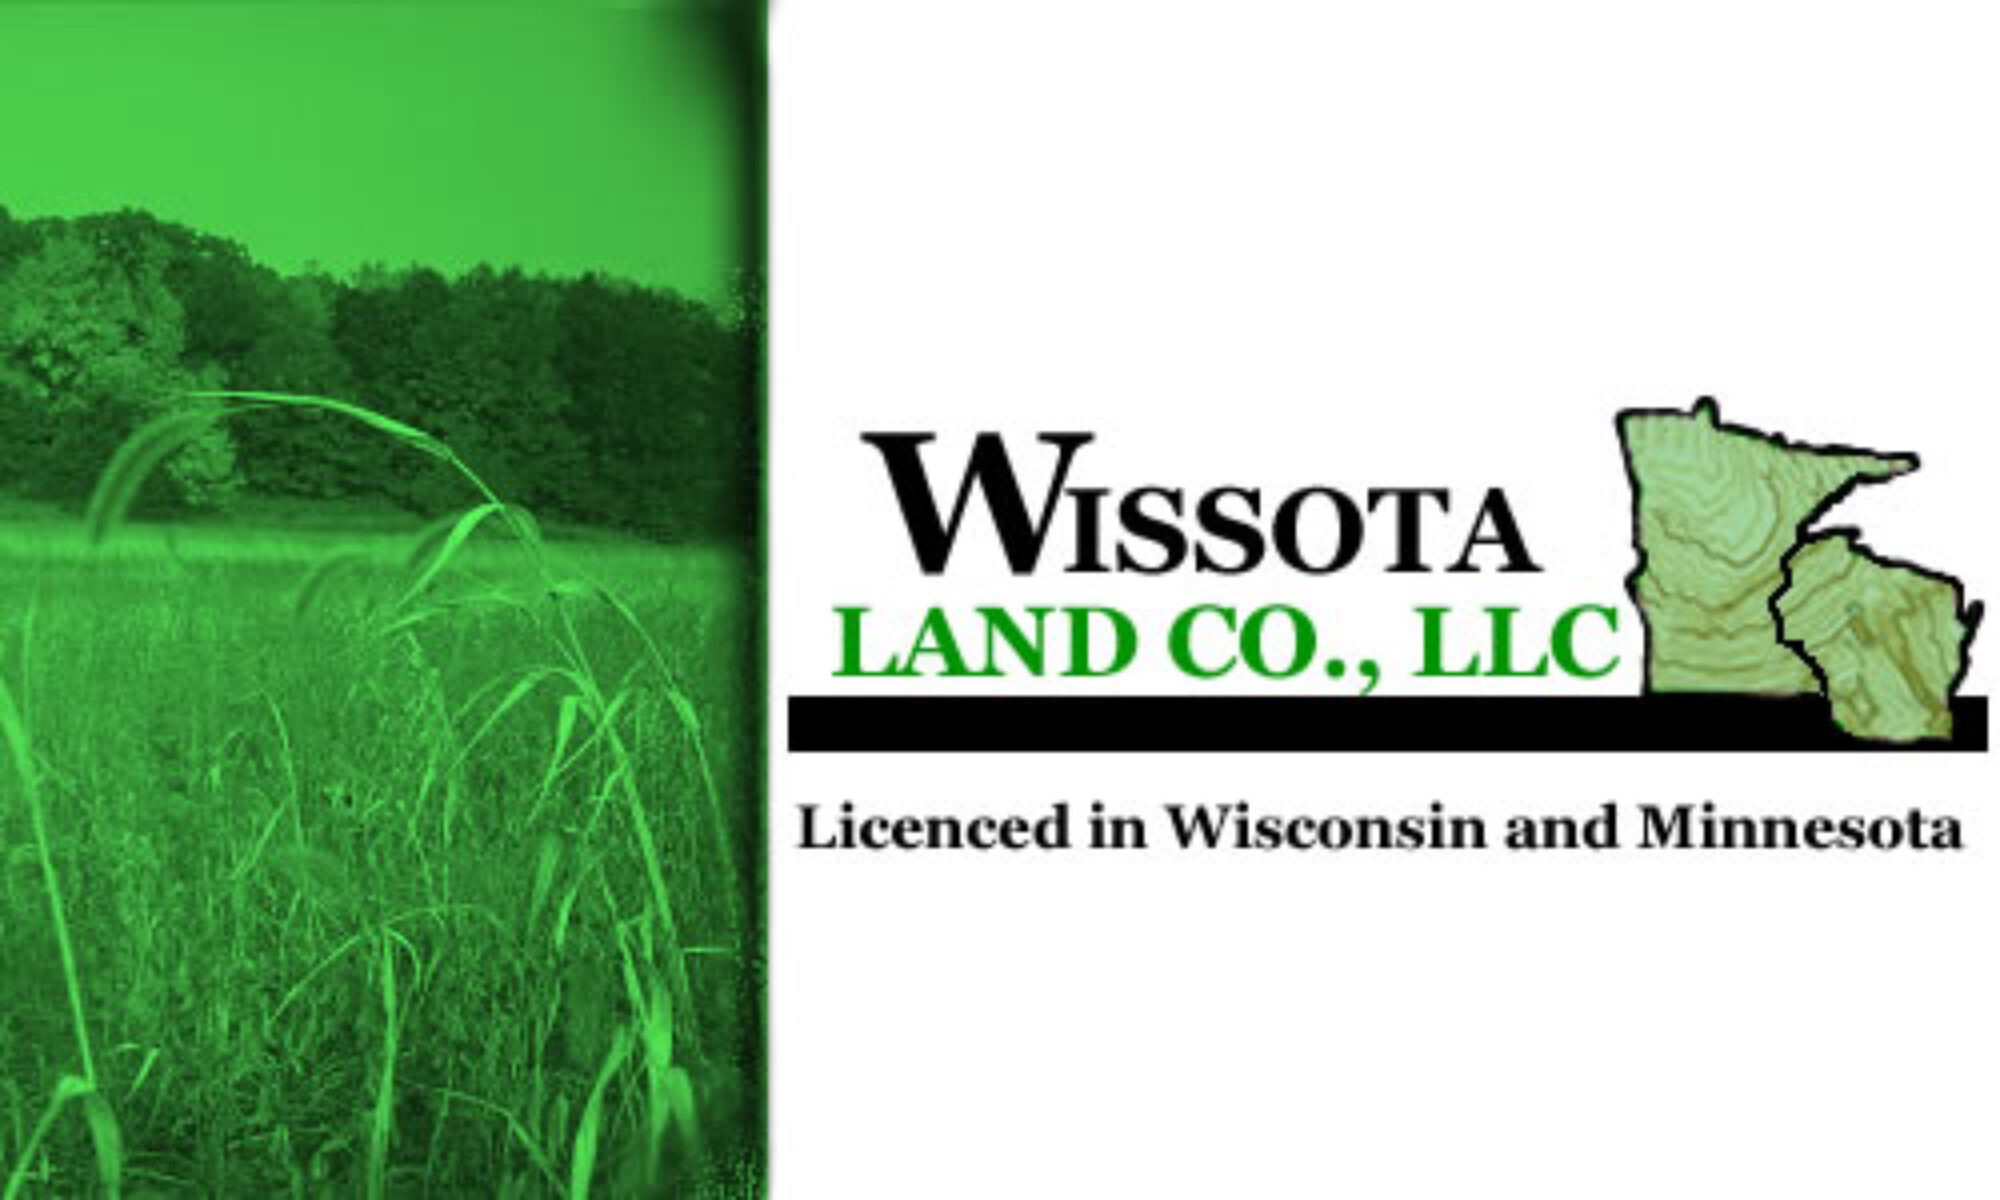 Wissota Land Co., LLC